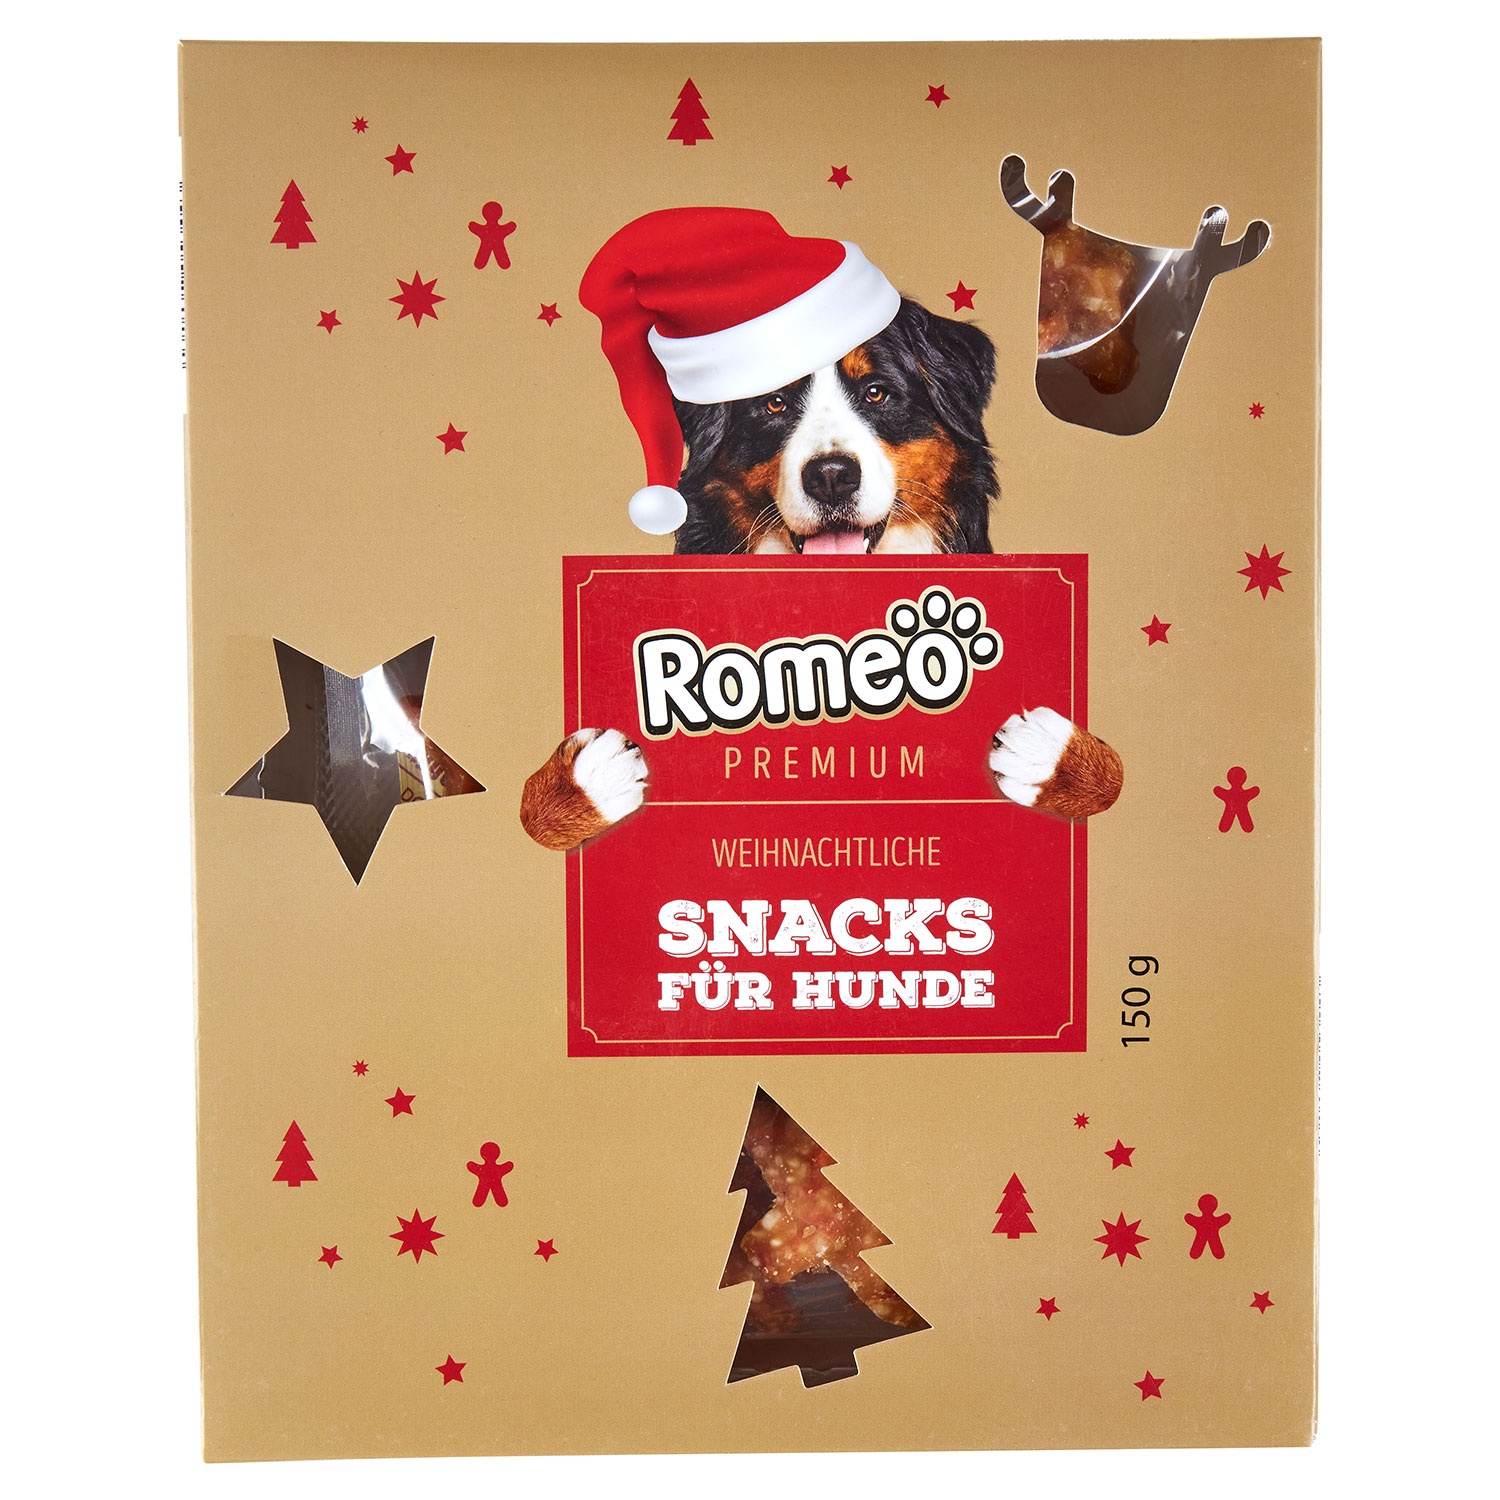 ROMEO PREMIUM Weihnachtliche Snacks für Hunde 150 g